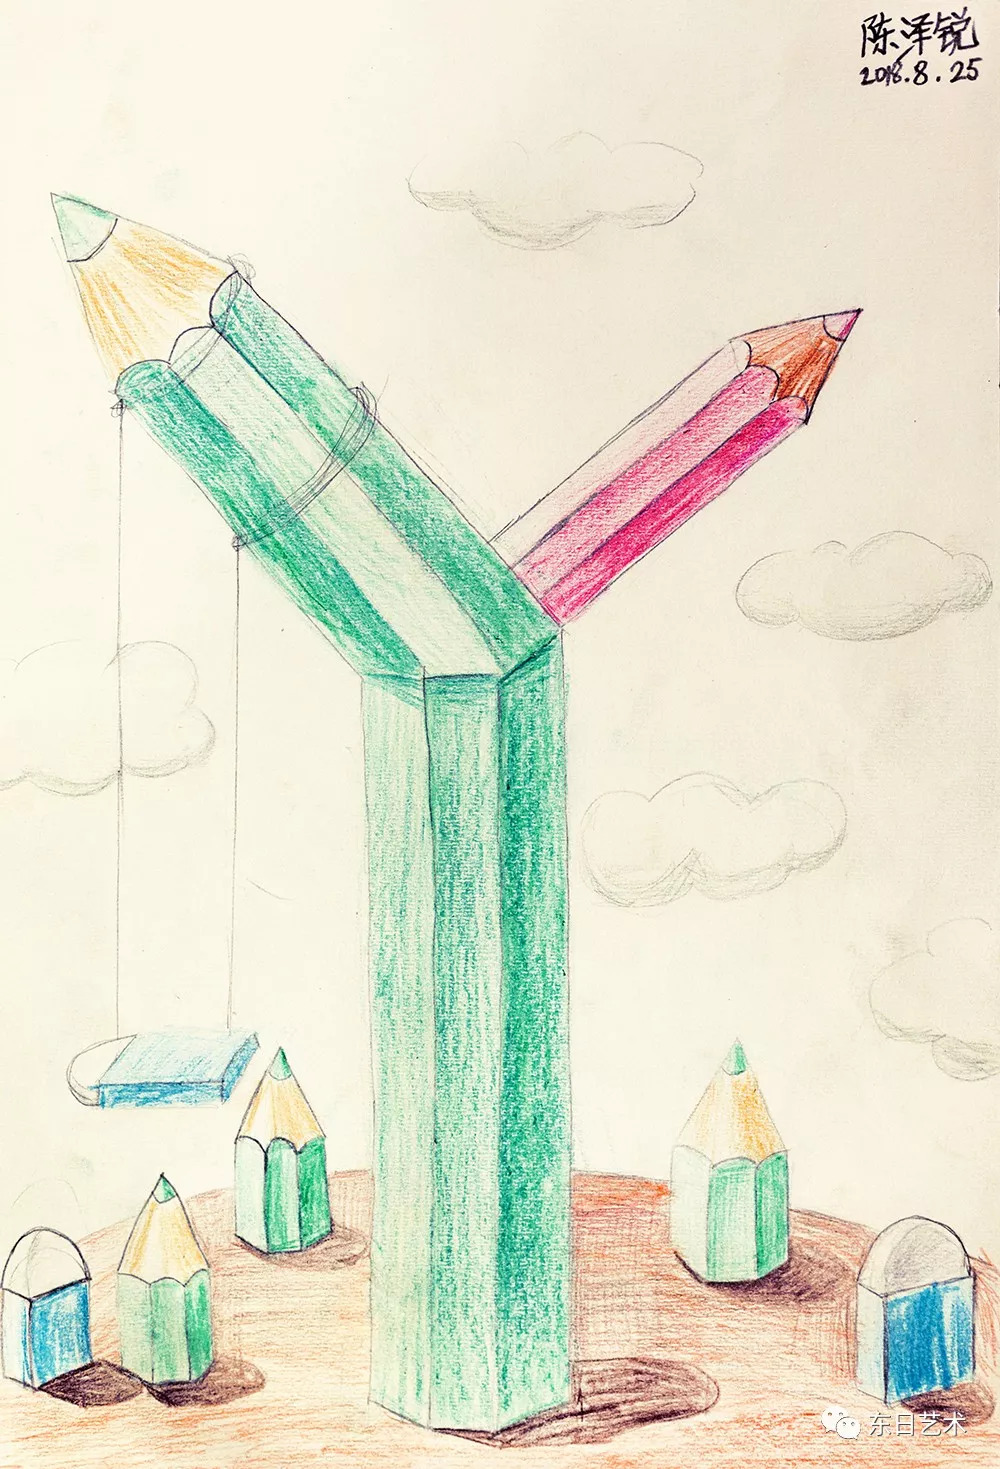 创意素描铅笔的联想